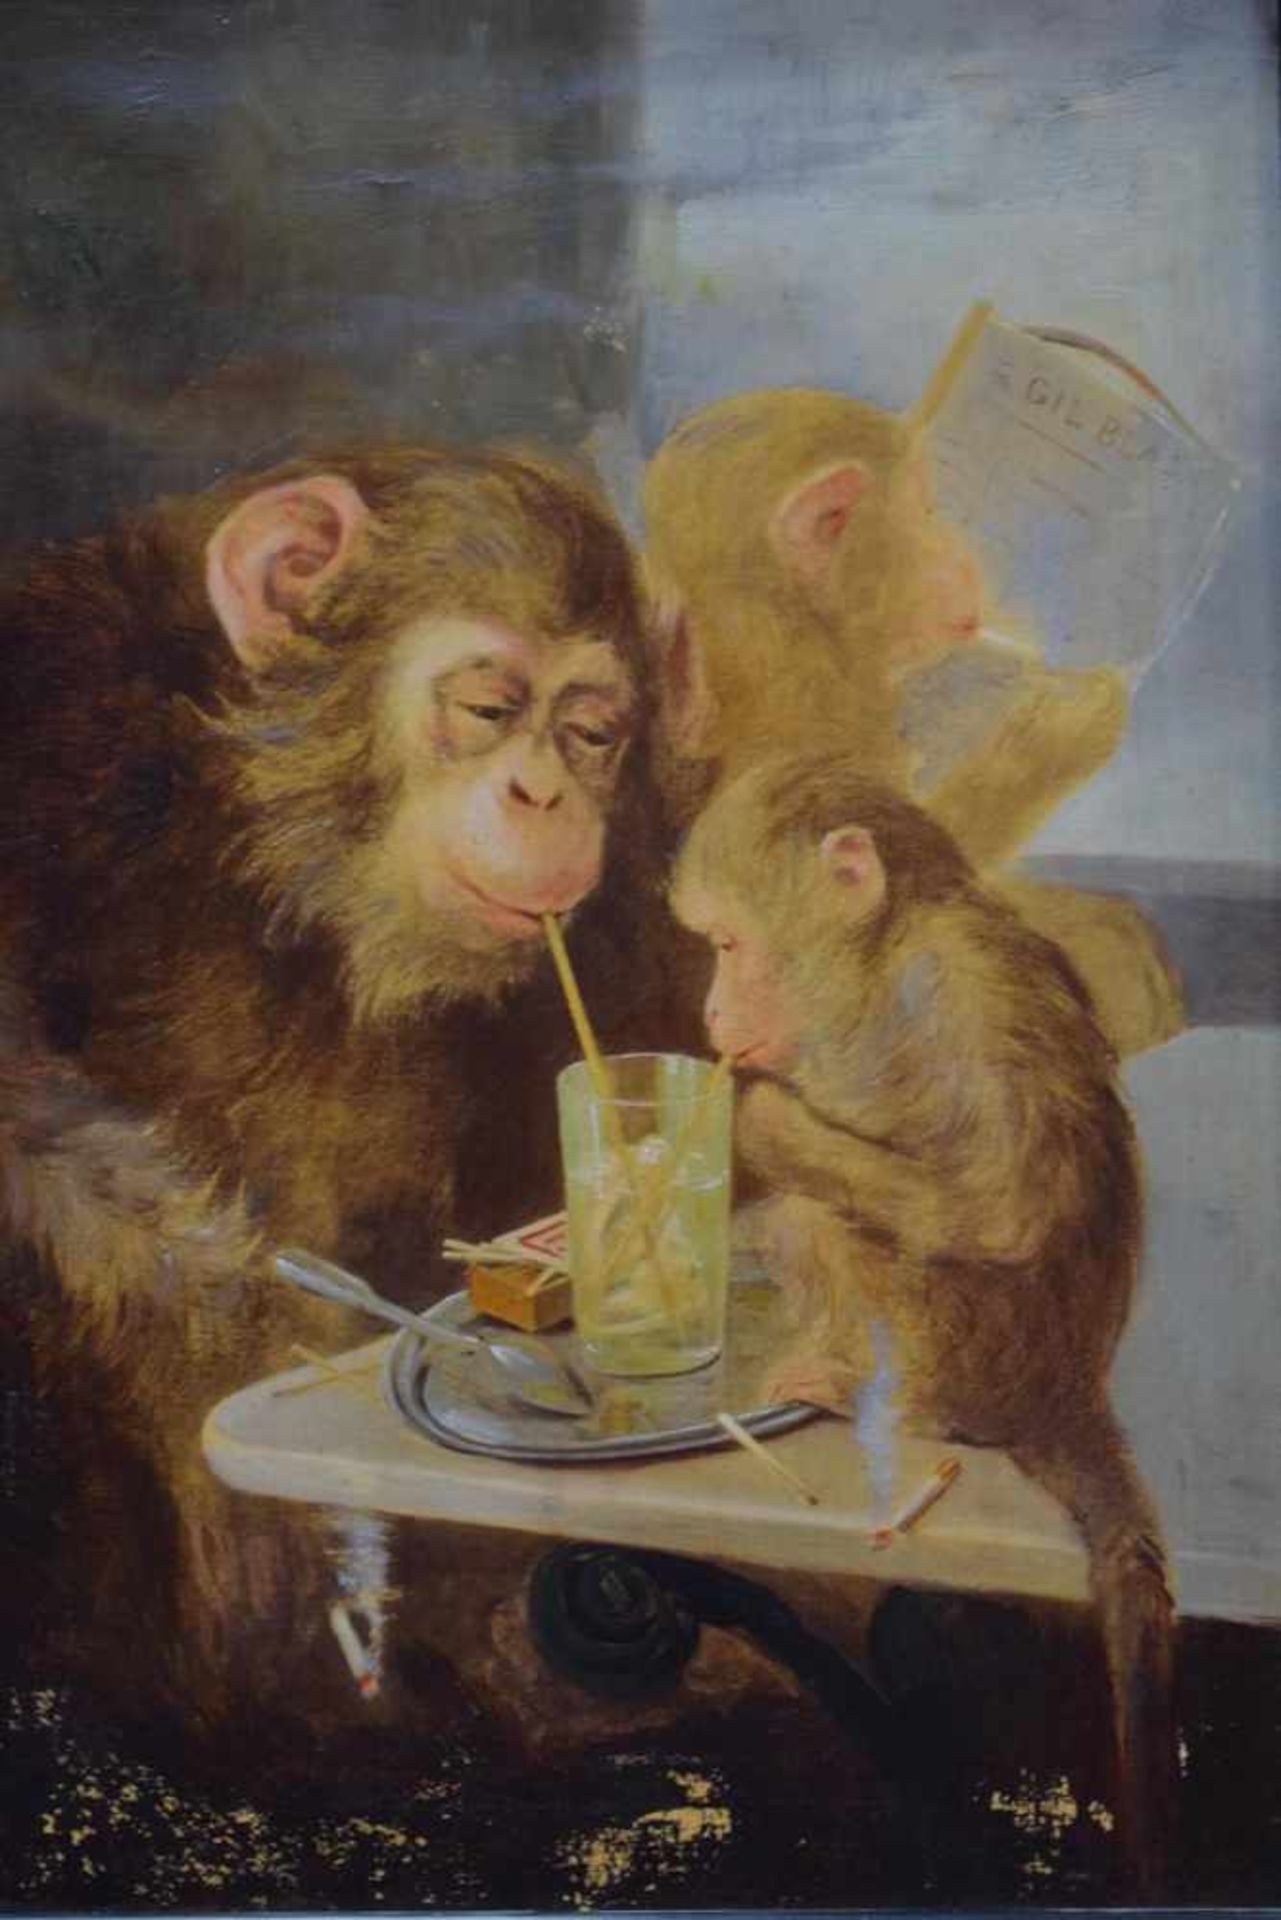 Anonymer Französischer Künstler des 19.Jh. "Die Affengruppe"Öl auf Leinwand, Alter 19.Jh. Signiert - Bild 2 aus 5